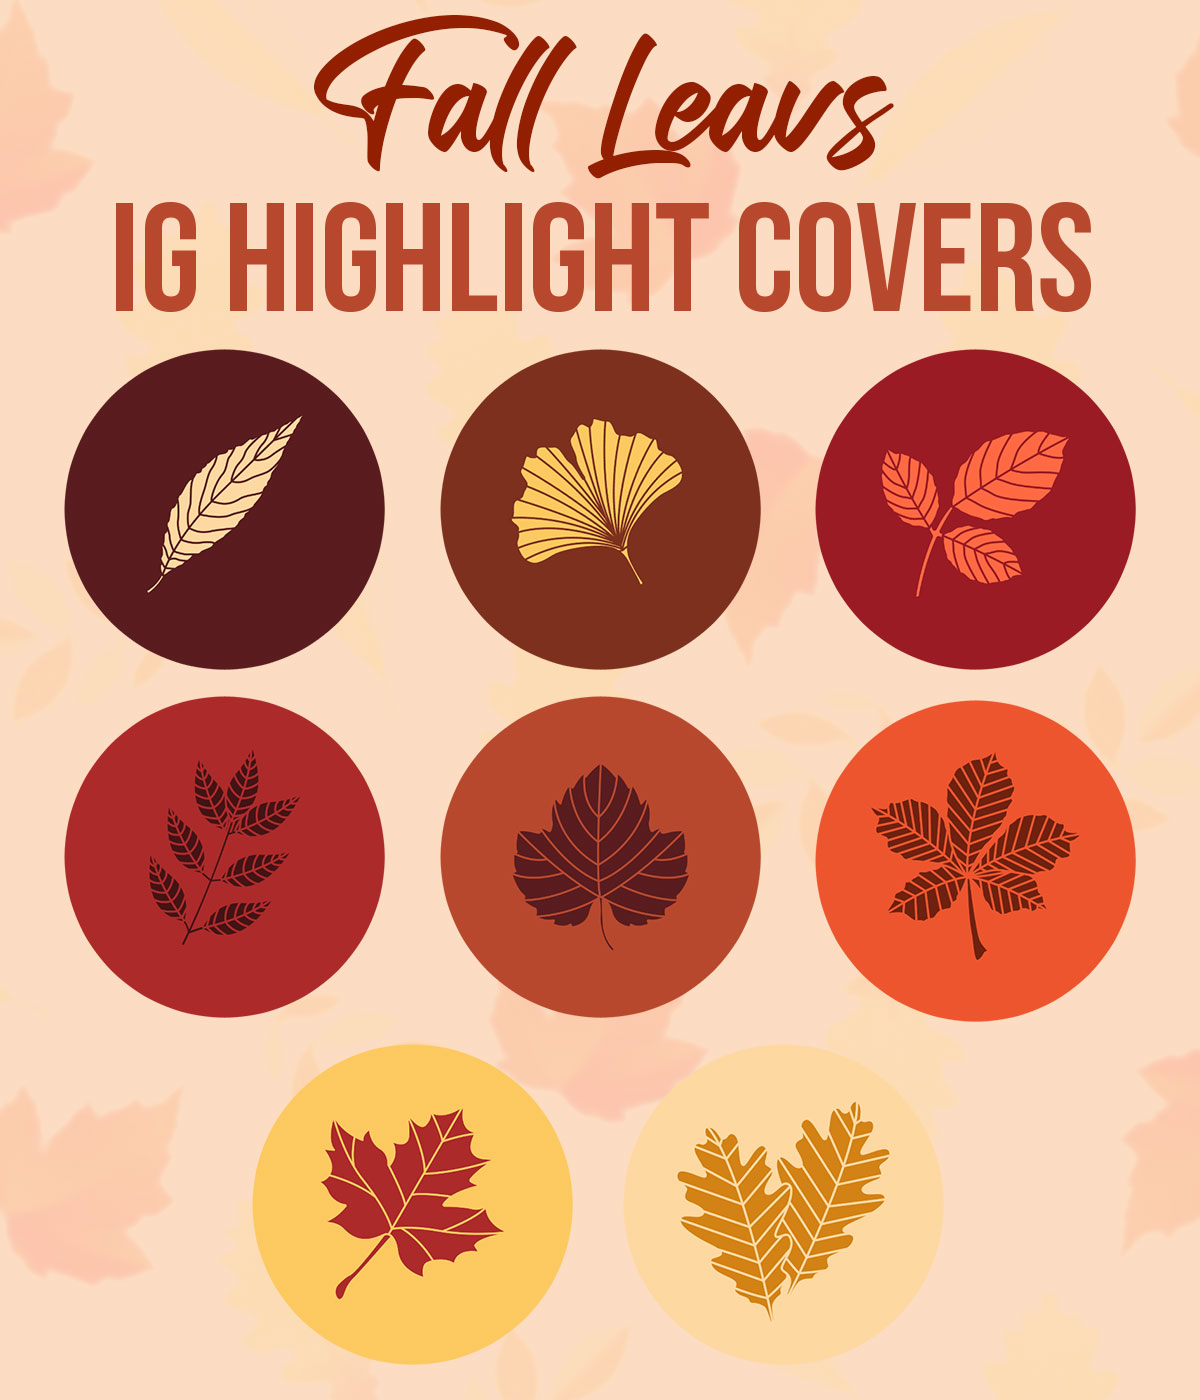 Paquete de fundas Fall Leaves IG Highlight